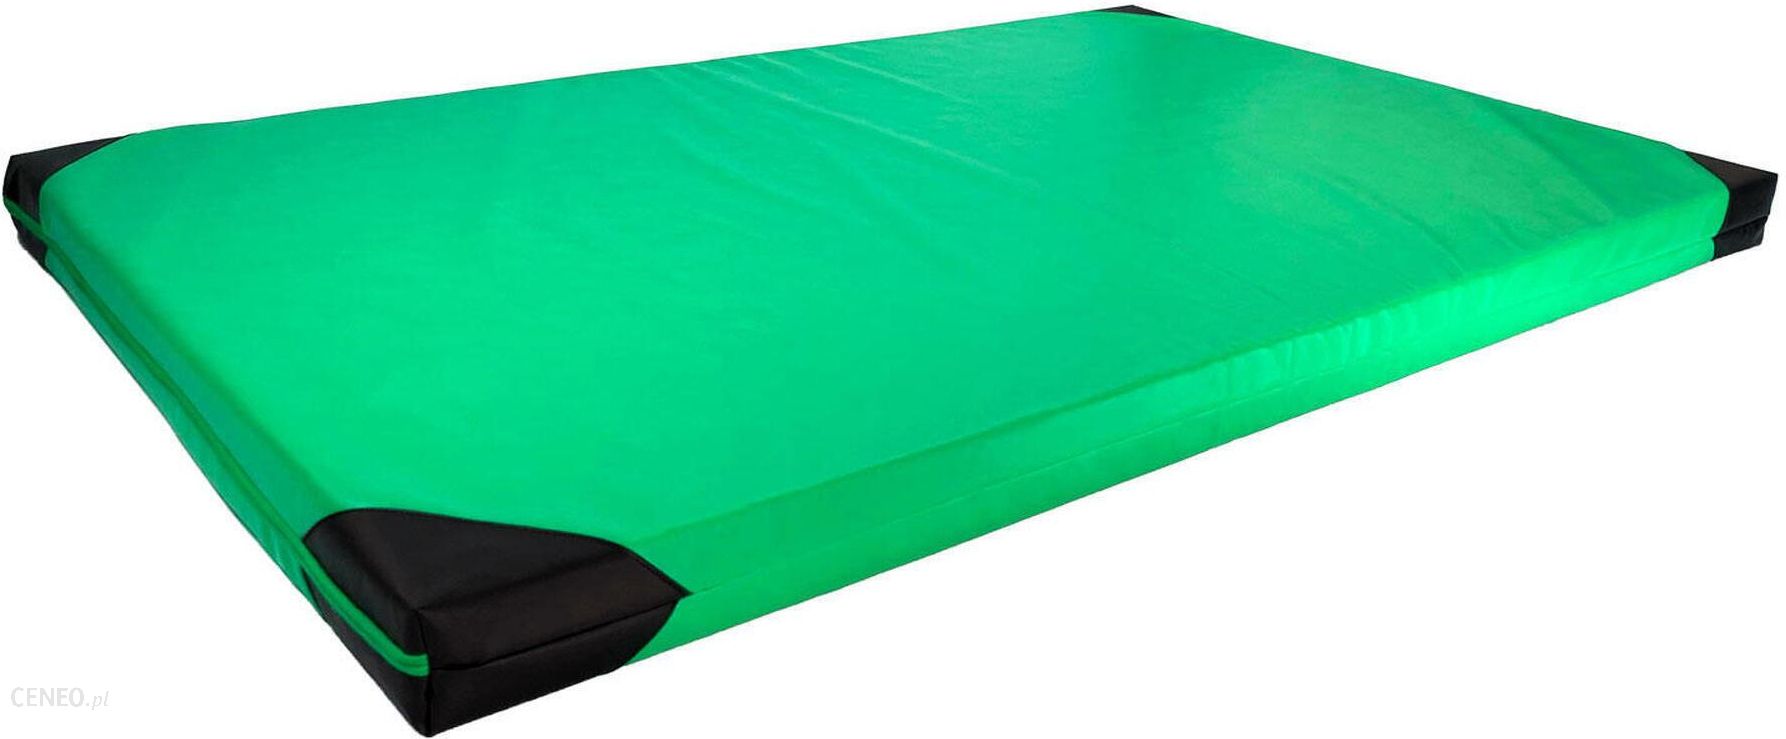 Underfit Materac Gimnastyczny 200x120 10cm Miękki Zielony